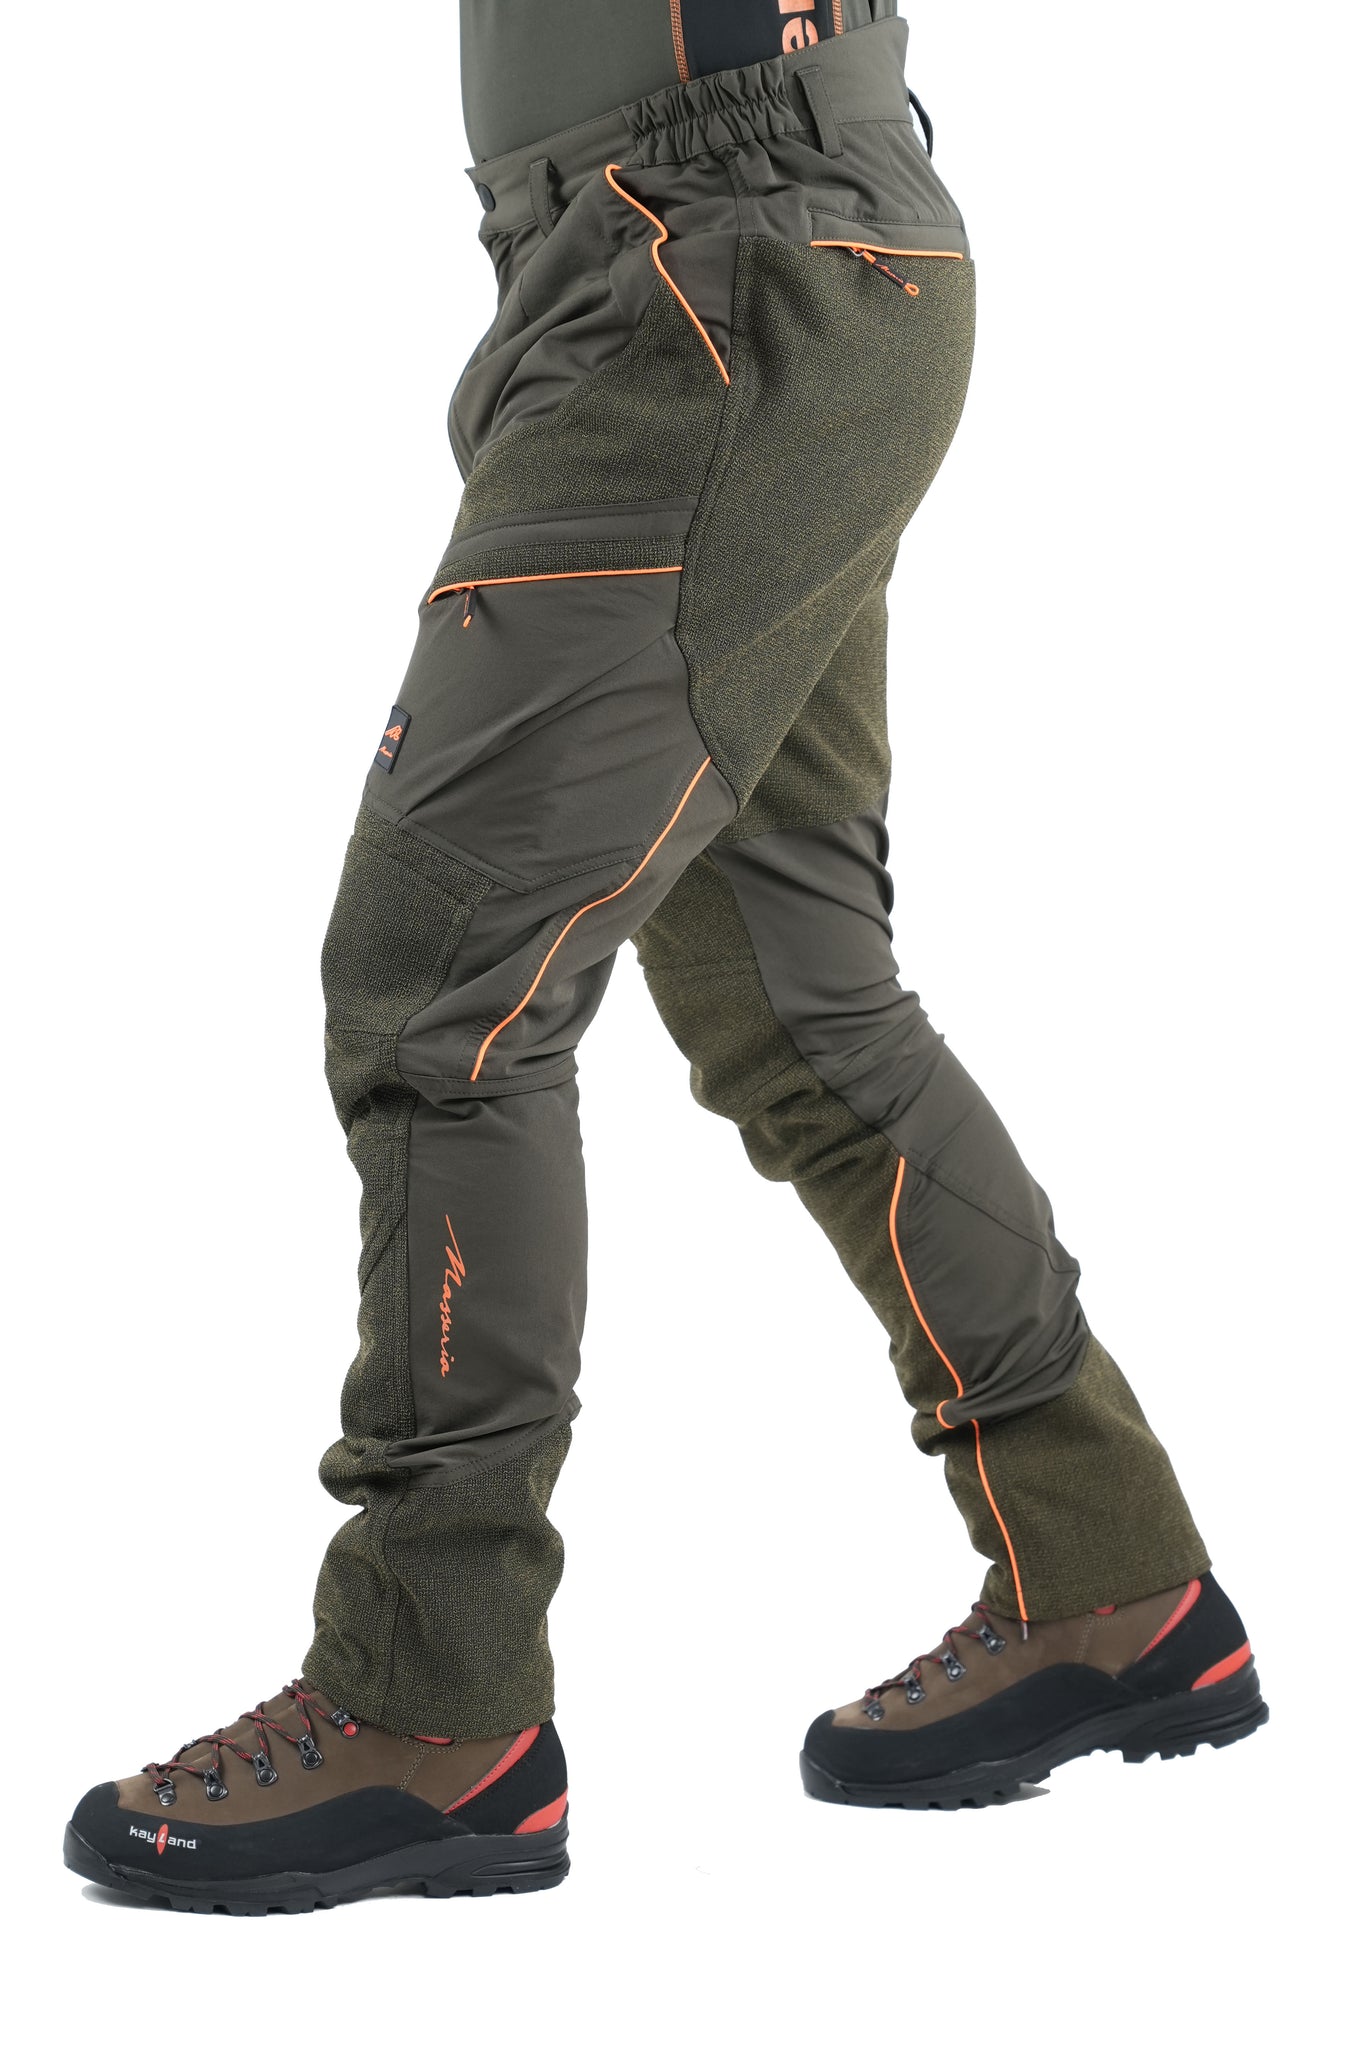 Pantalone Massria Spandex con Rinforzi 94 Verde Arancio Fluo